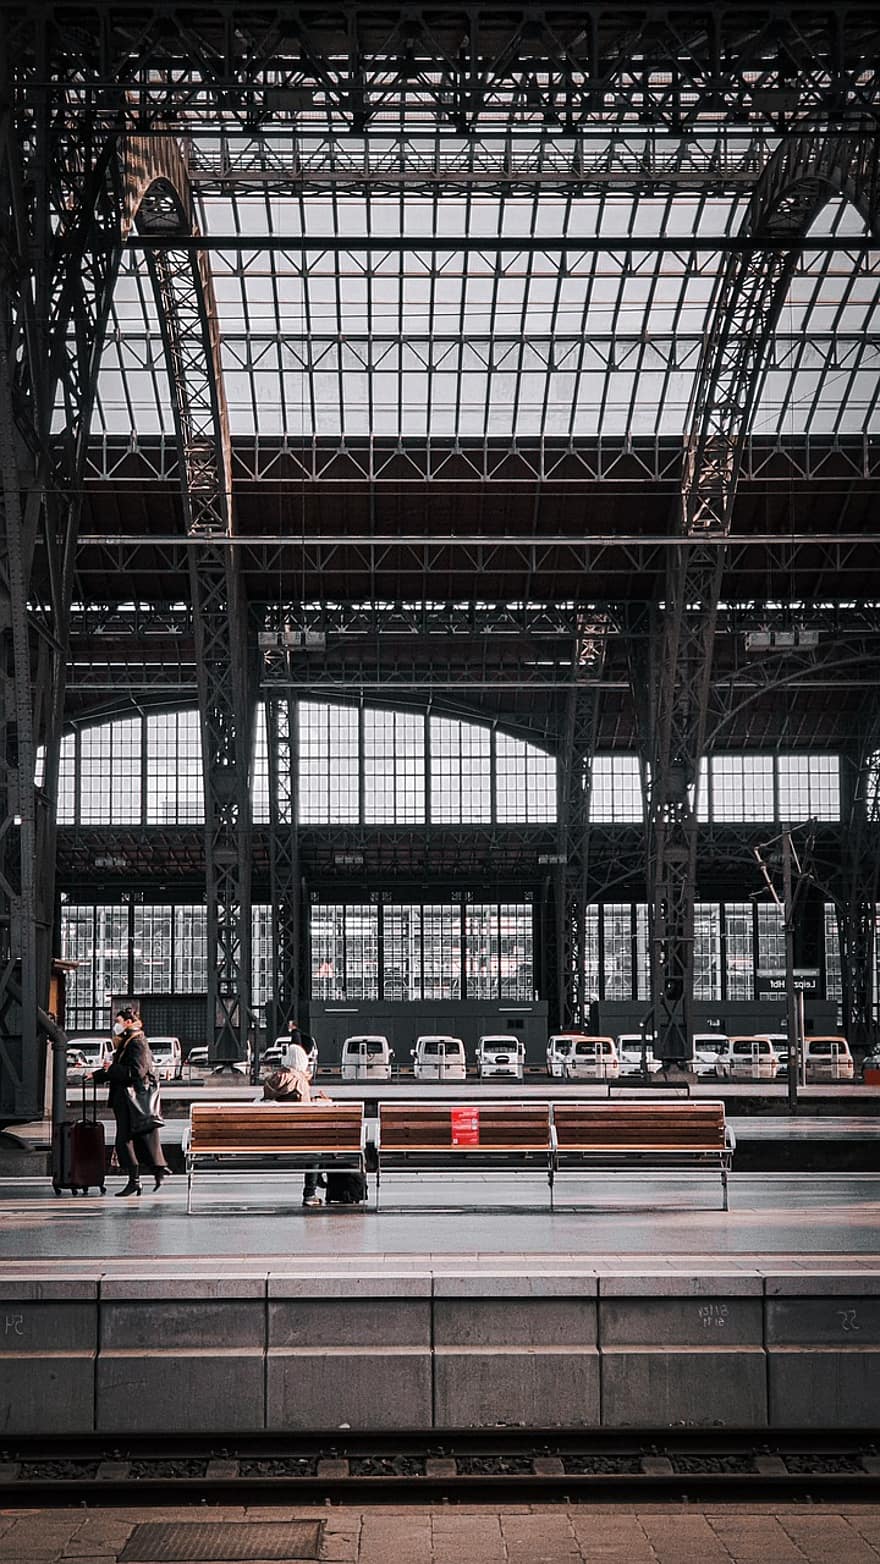 estação de trem, plataforma, viagem, Saxônia, arquitetura, dentro de casa, transporte, estrutura construída, vida urbana, modo de transporte, moderno